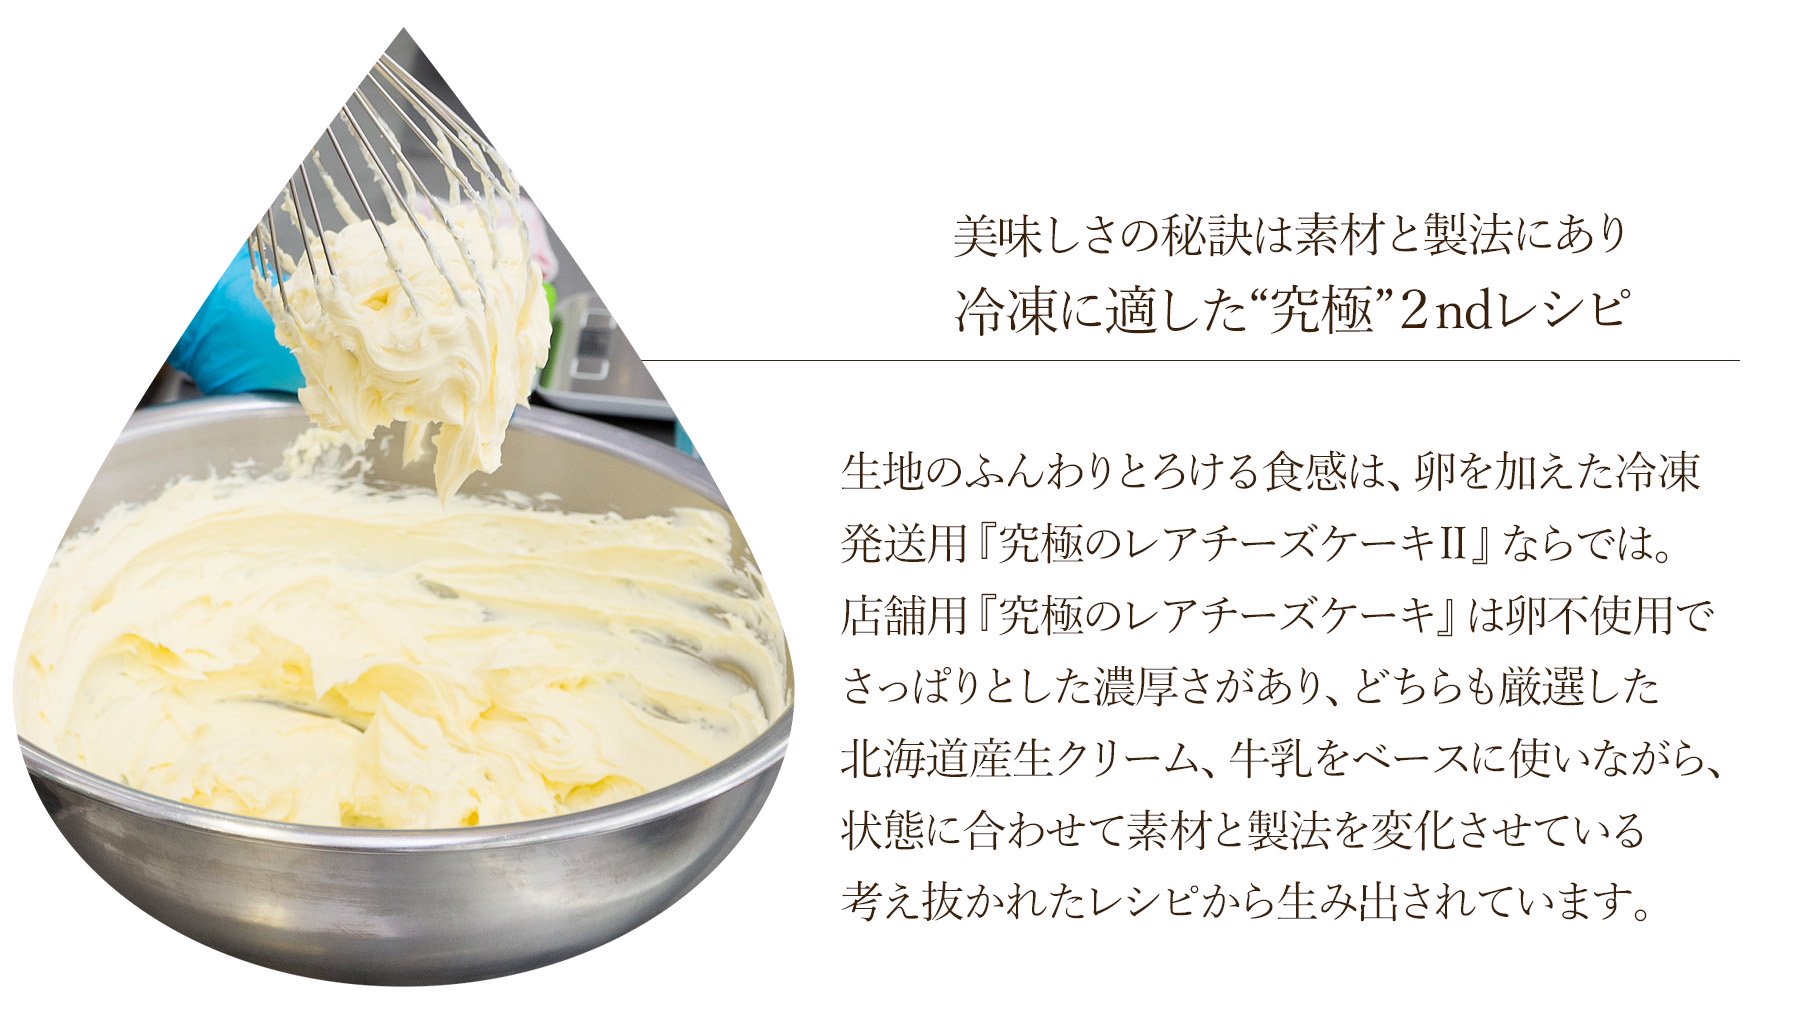 数種類の中から厳選した北海道産生クリーム、牛乳を使用。生地のふんわりとろける食感は、程よい酸味としっかり濃厚さが感じられるクリームチーズのバランスを計算して考え抜かれた製法から生み出されています。